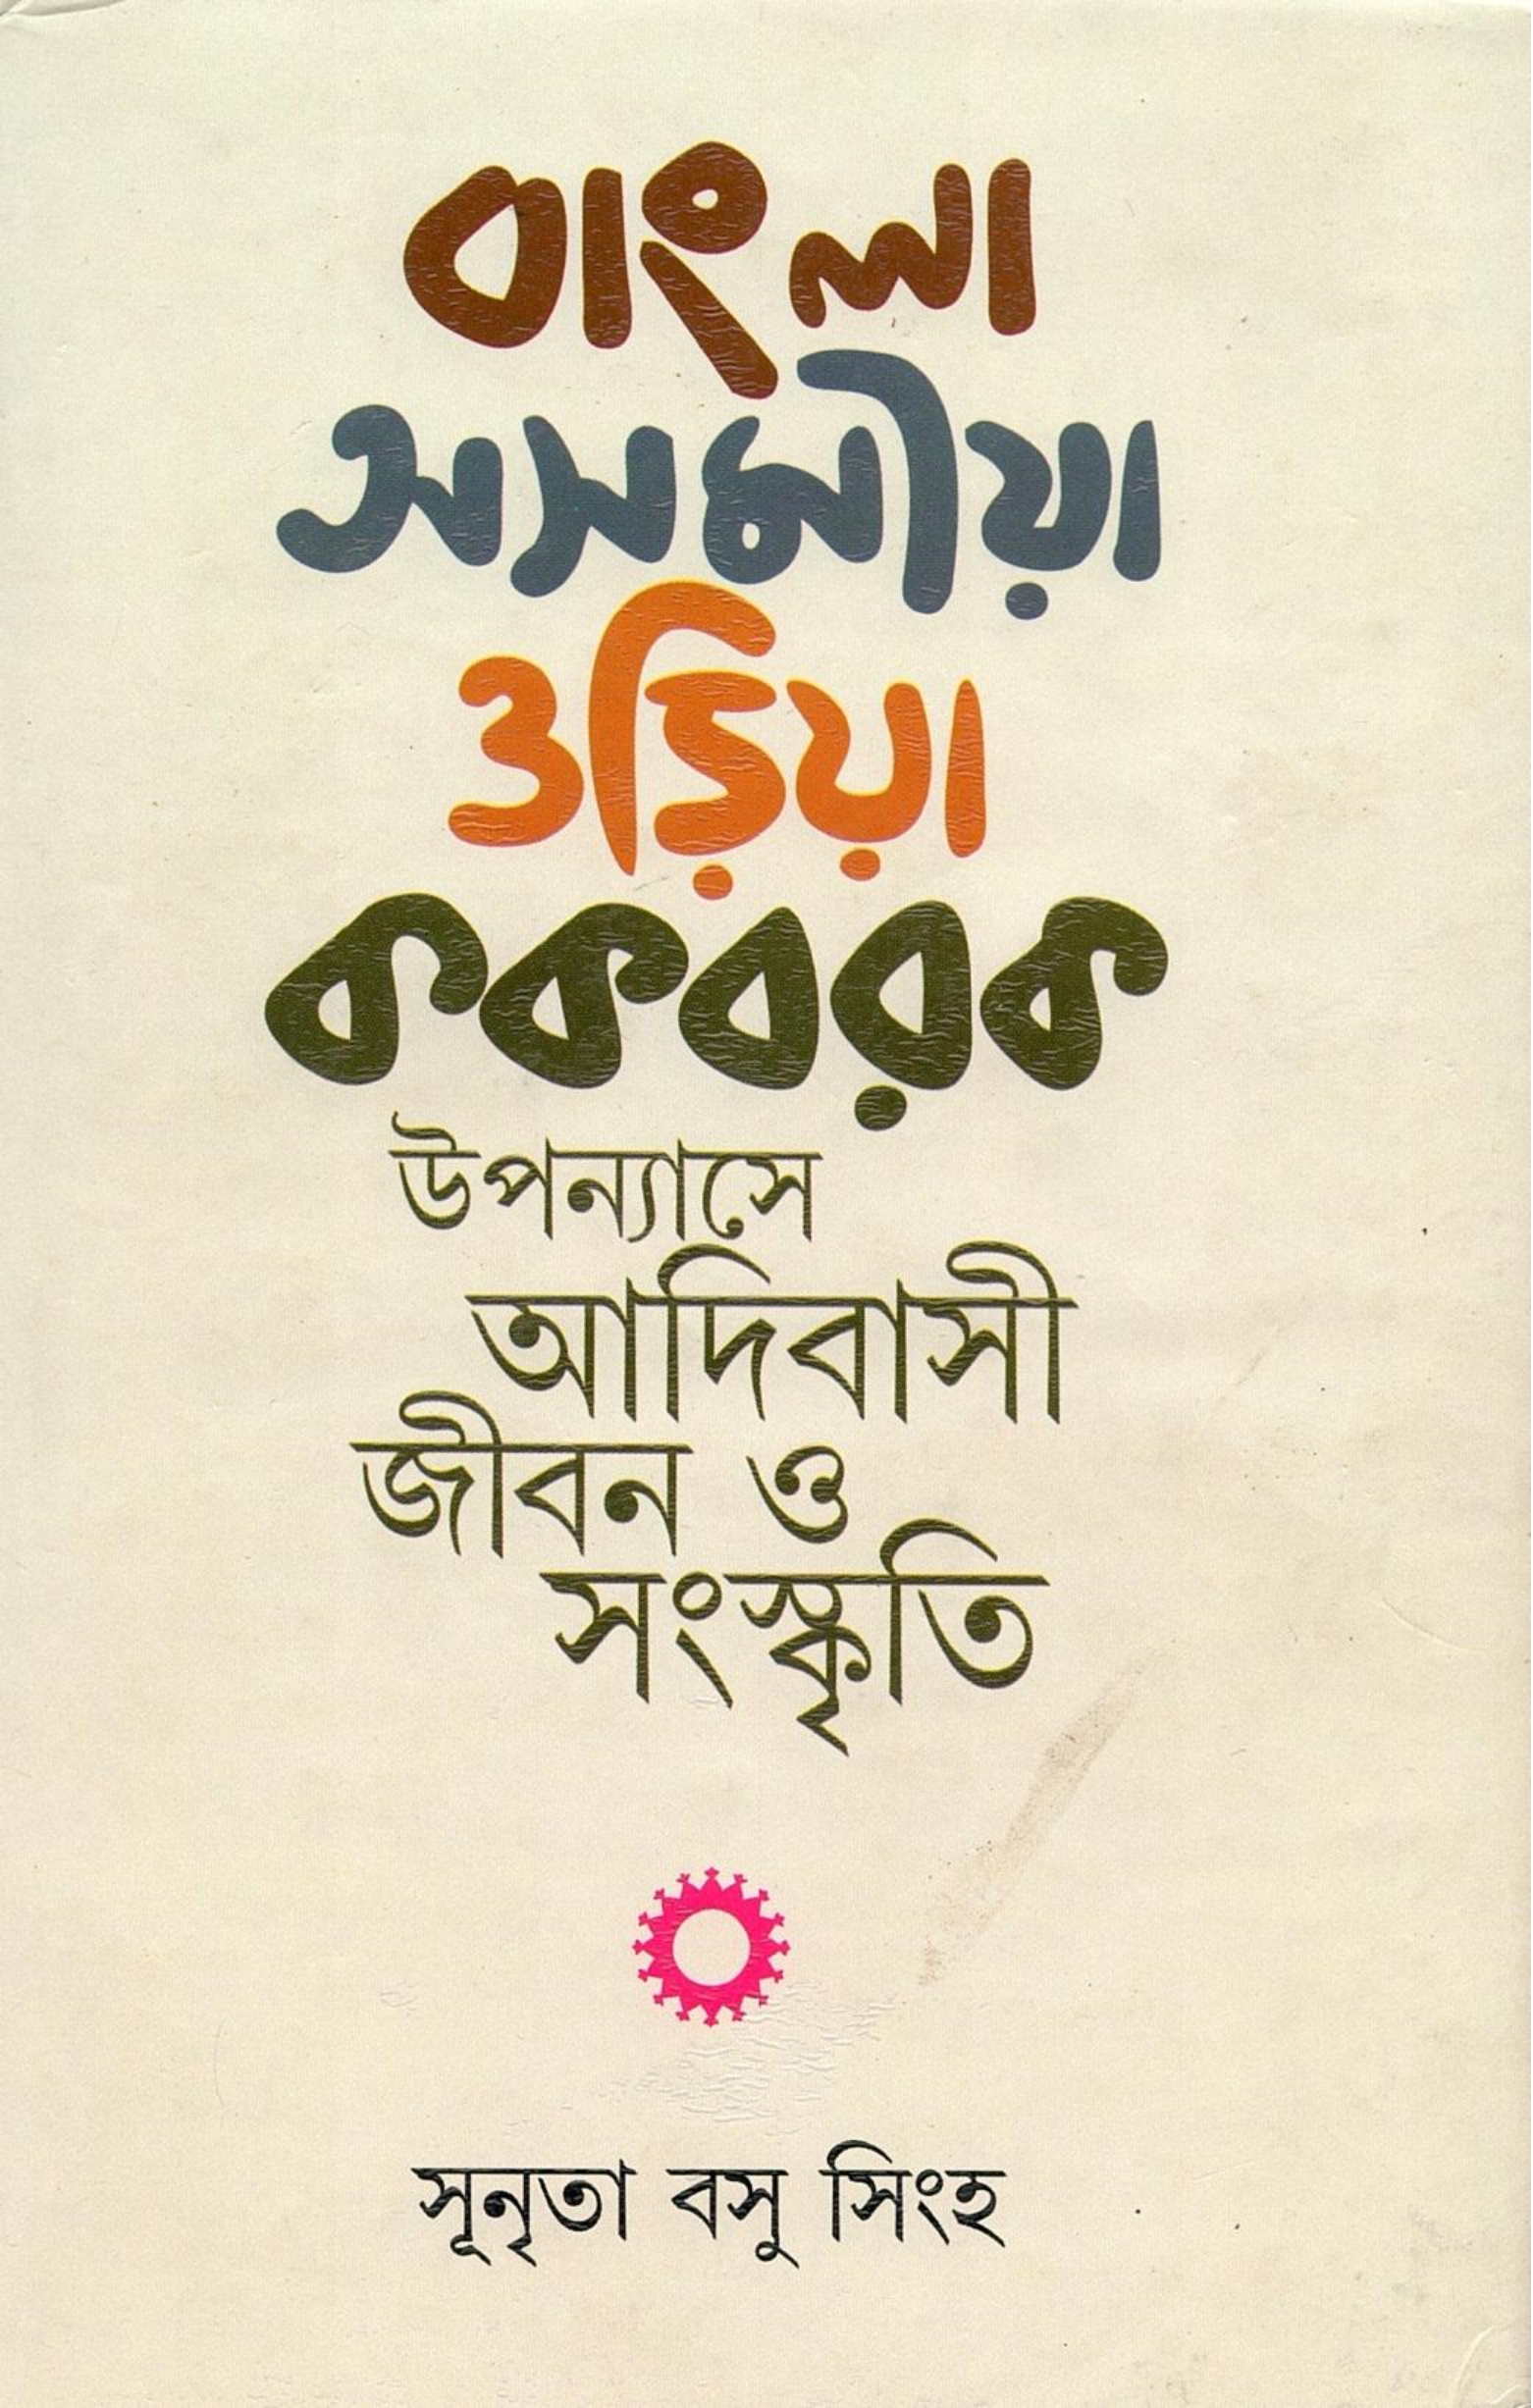 বাংলা-অসমীয়া-ওড়িয়া-ককবরক উপন্যাসে আদিবাসী জীবন ও সংস্কৃতি | Bangla-Asammiya-Oriya-Kakbarak Upanyase Adibasi Jiban O Samaskriti